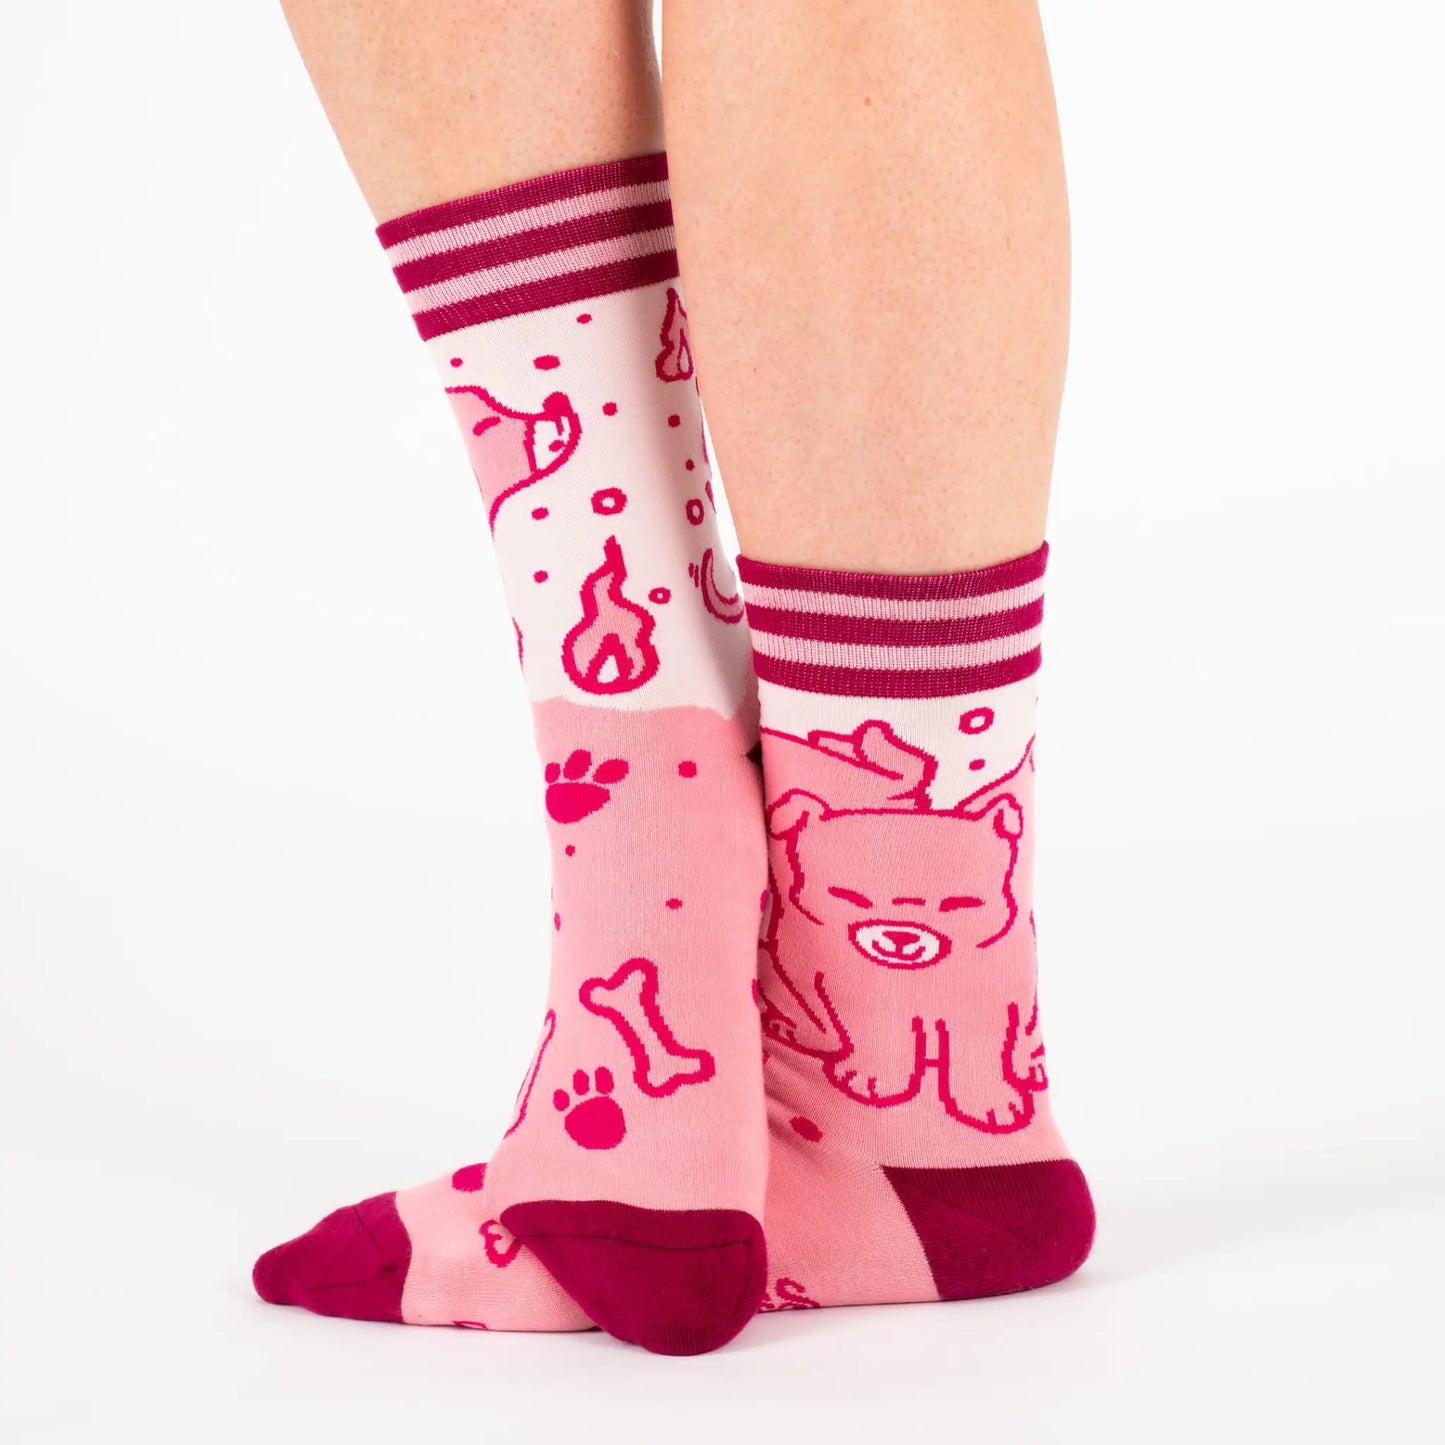 Cute Cerberus Socks